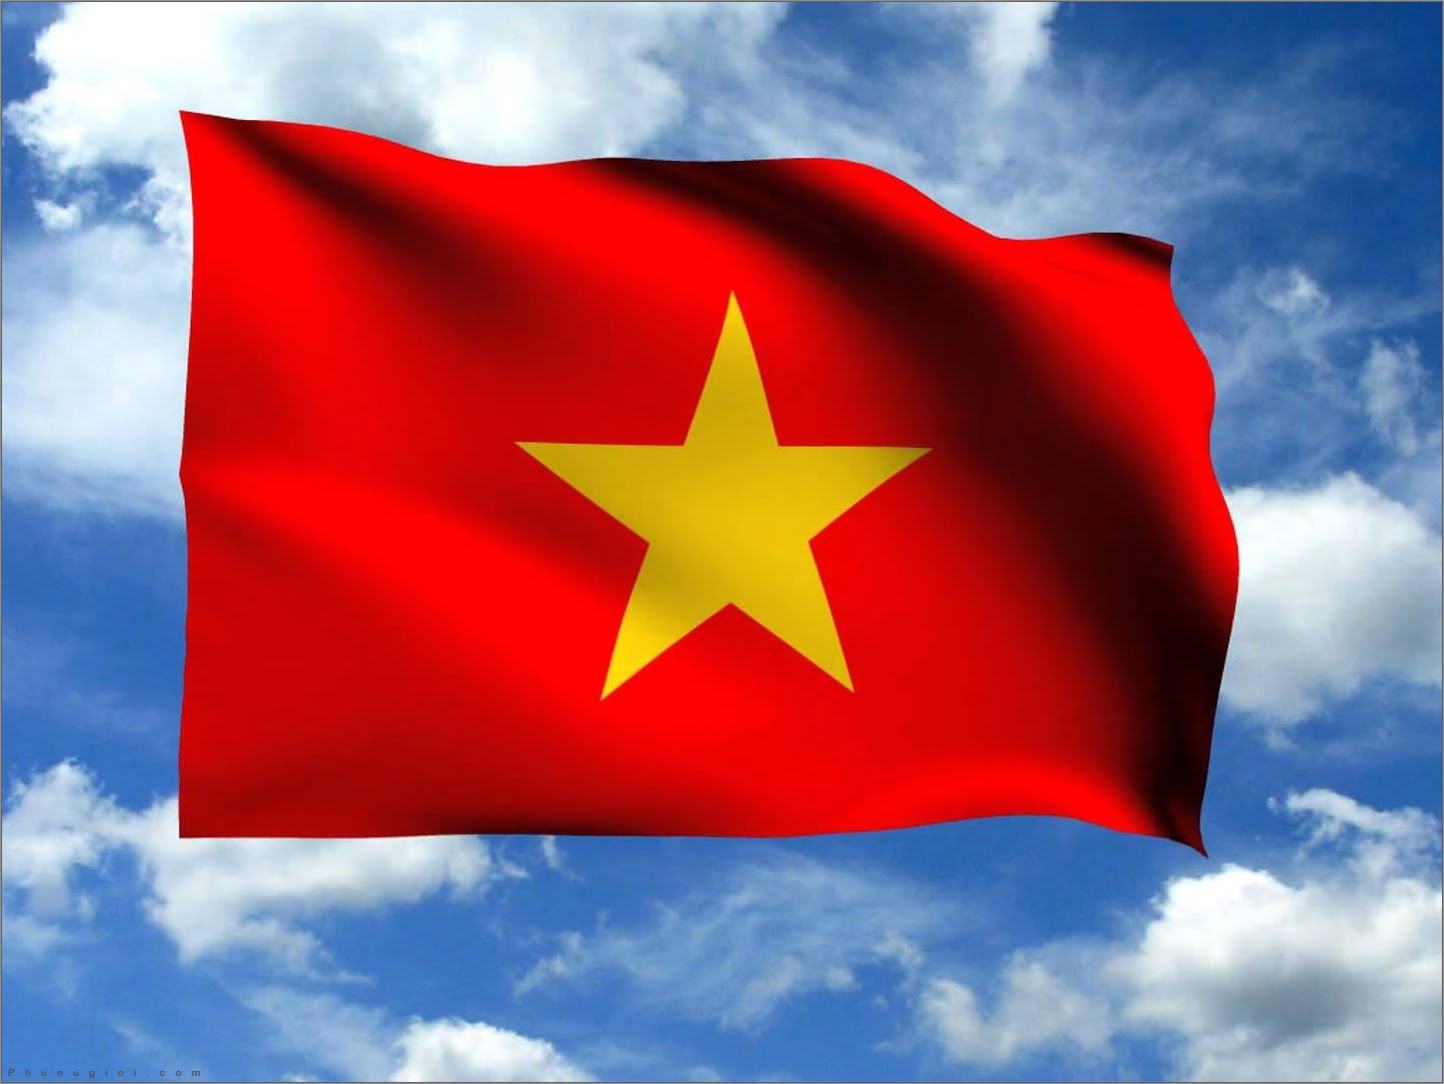 Đất nước Việt Nam đẹp như thế nào? Hãy xem những bức ảnh Avatar Star chụp lại để khám phá vẻ đẹp tuyệt vời của đất nước và con người Việt Nam. Tấm bản đồ tim sẽ đập nhanh hơn với những cảnh đẹp này.